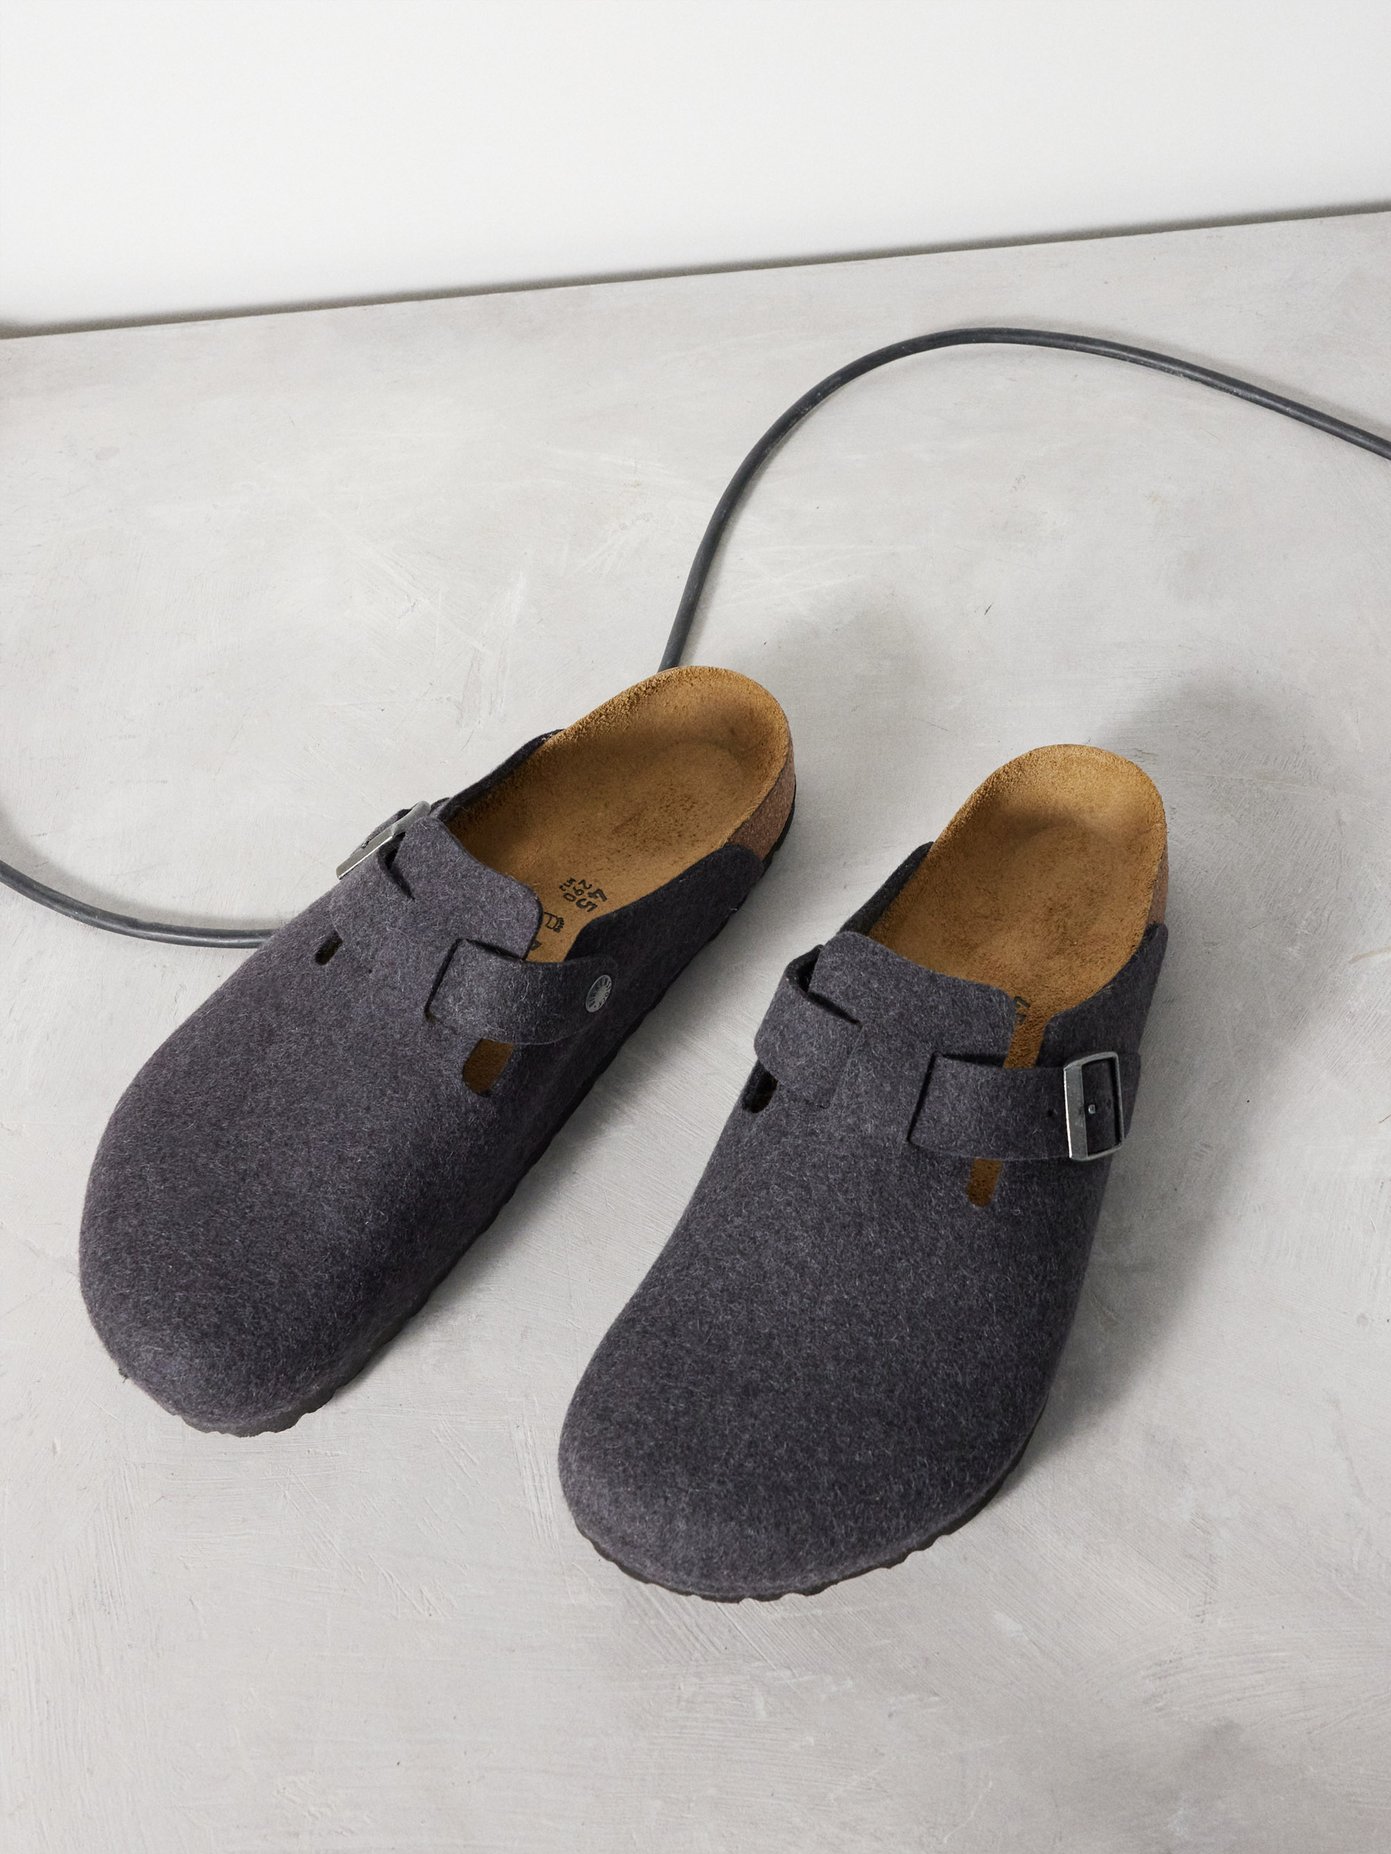 wool birkenstock sandals